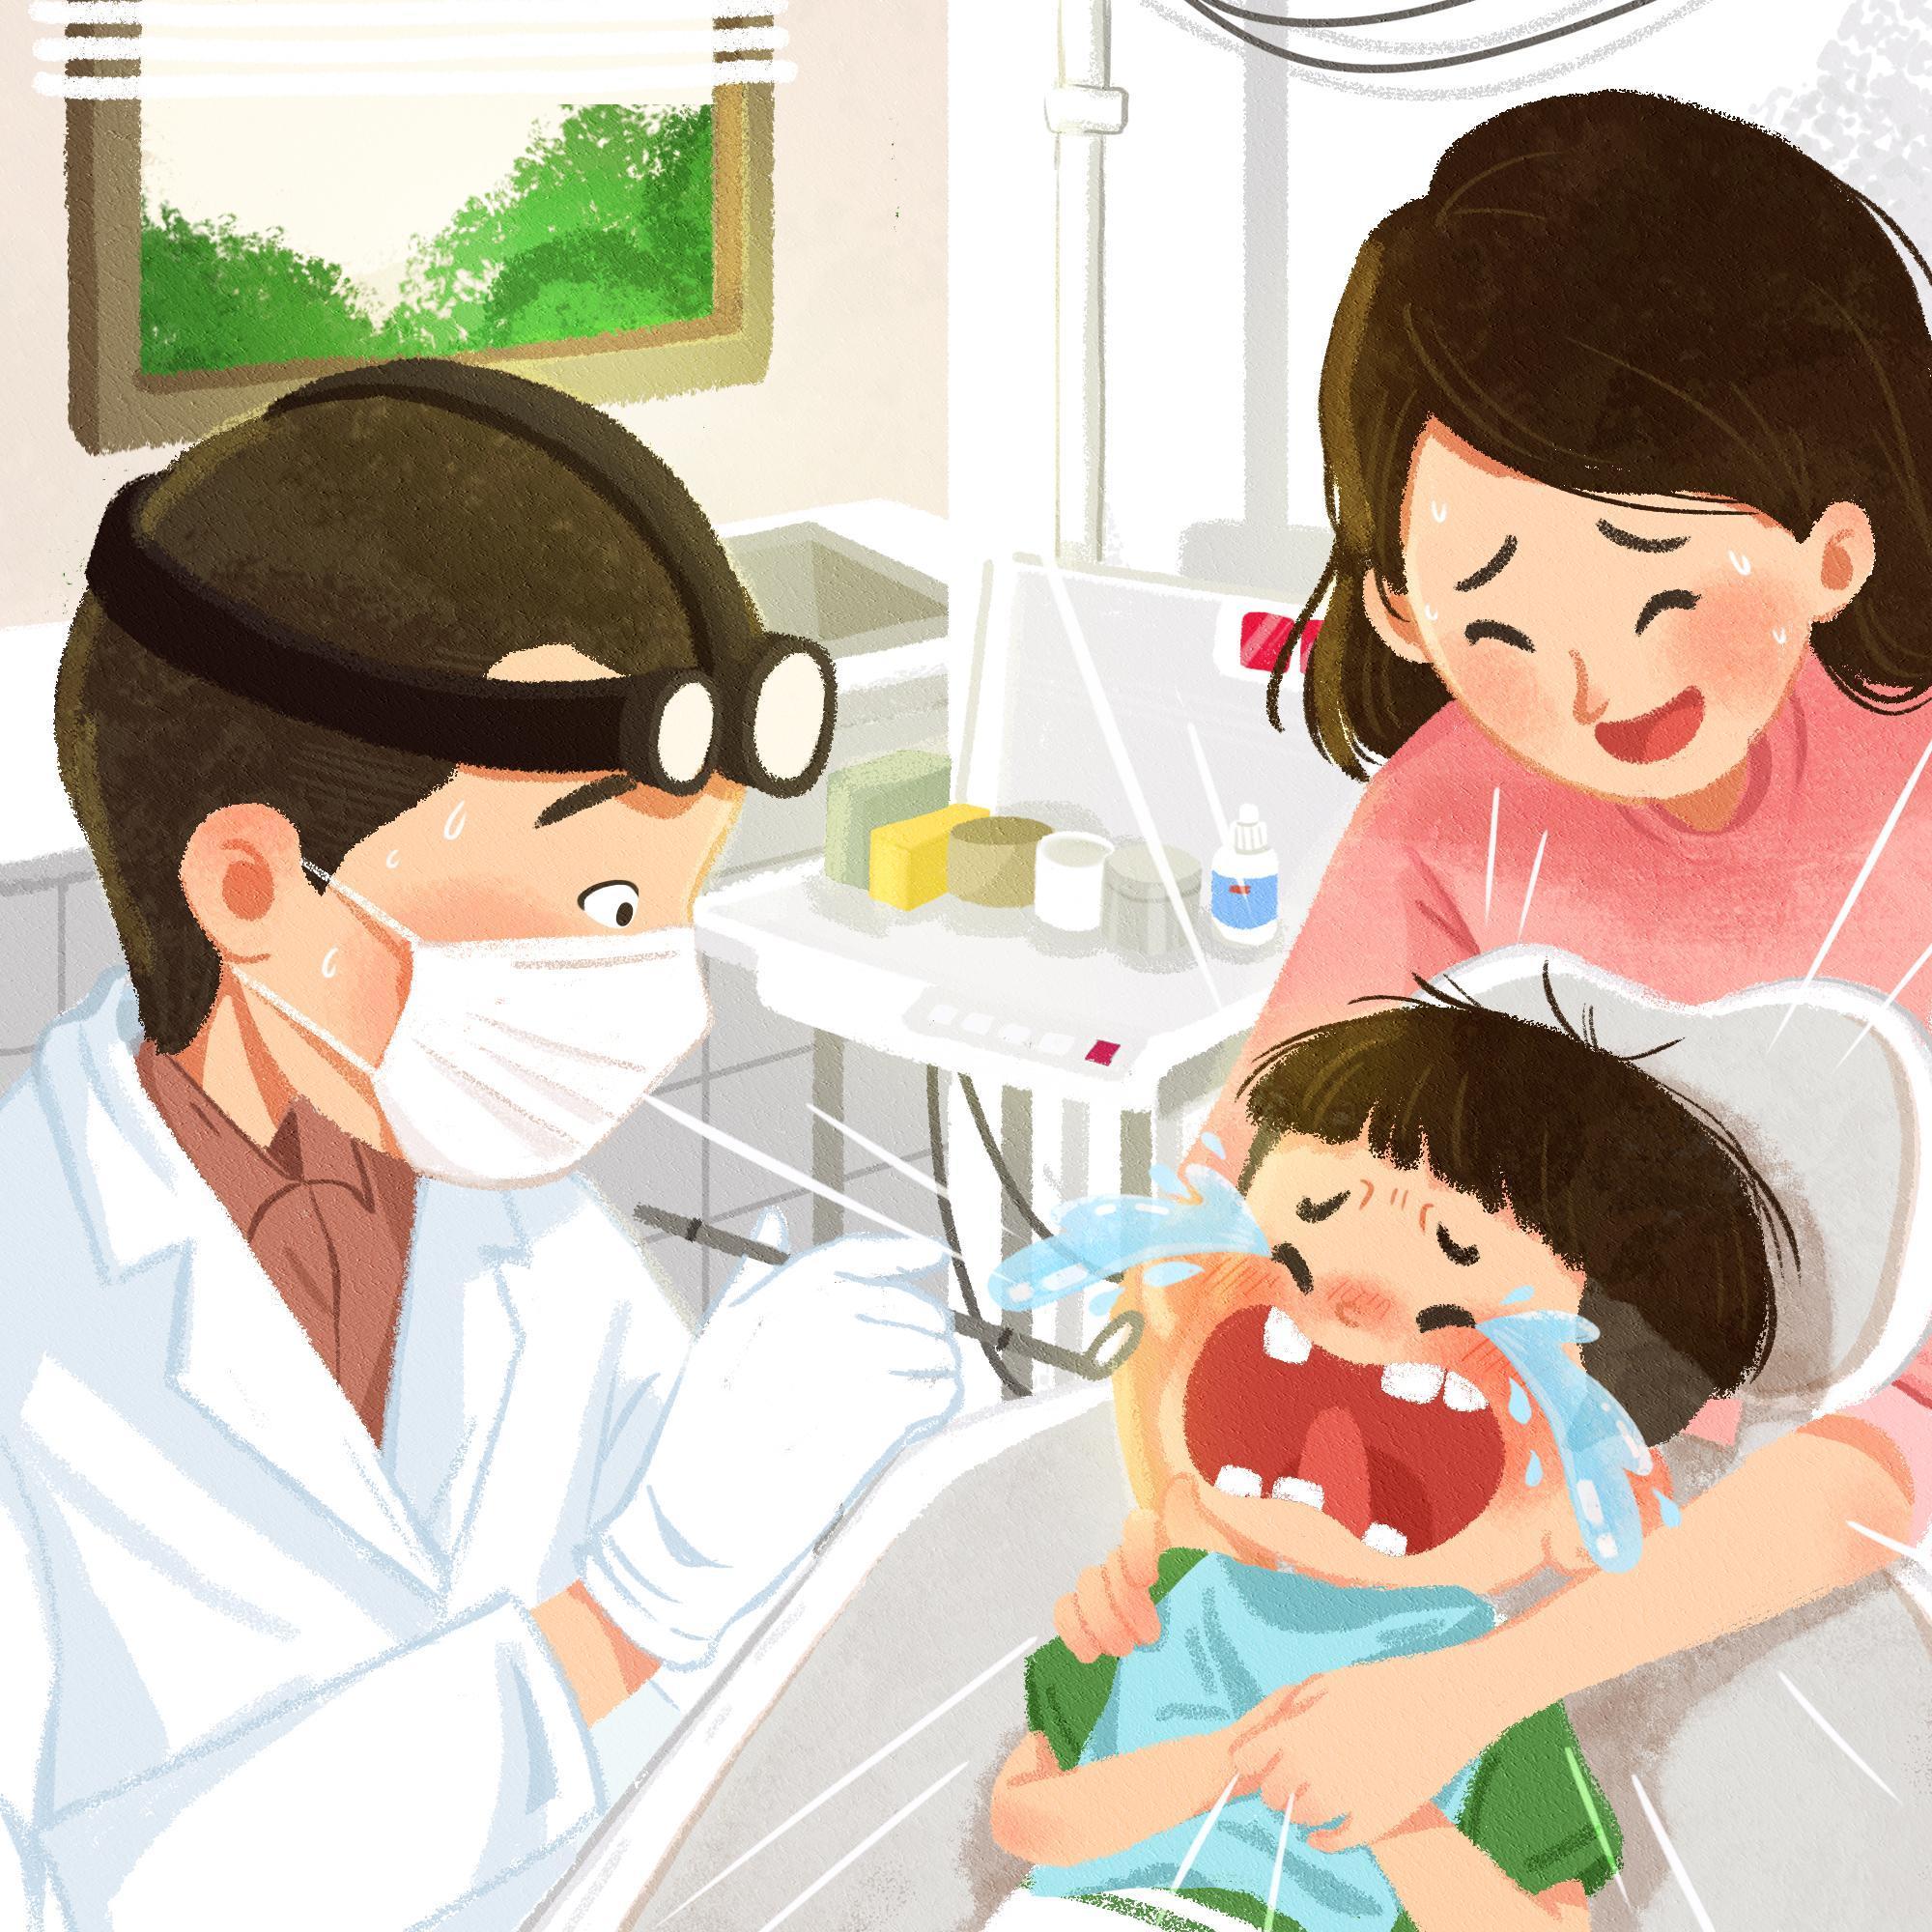 “Lúc ở nhà mẹ cũng là nha sĩ” - Bộ tranh khơi gợi loạt kỷ niệm răng lợi “huyền thoại” của triệu gia đình - Ảnh 3.